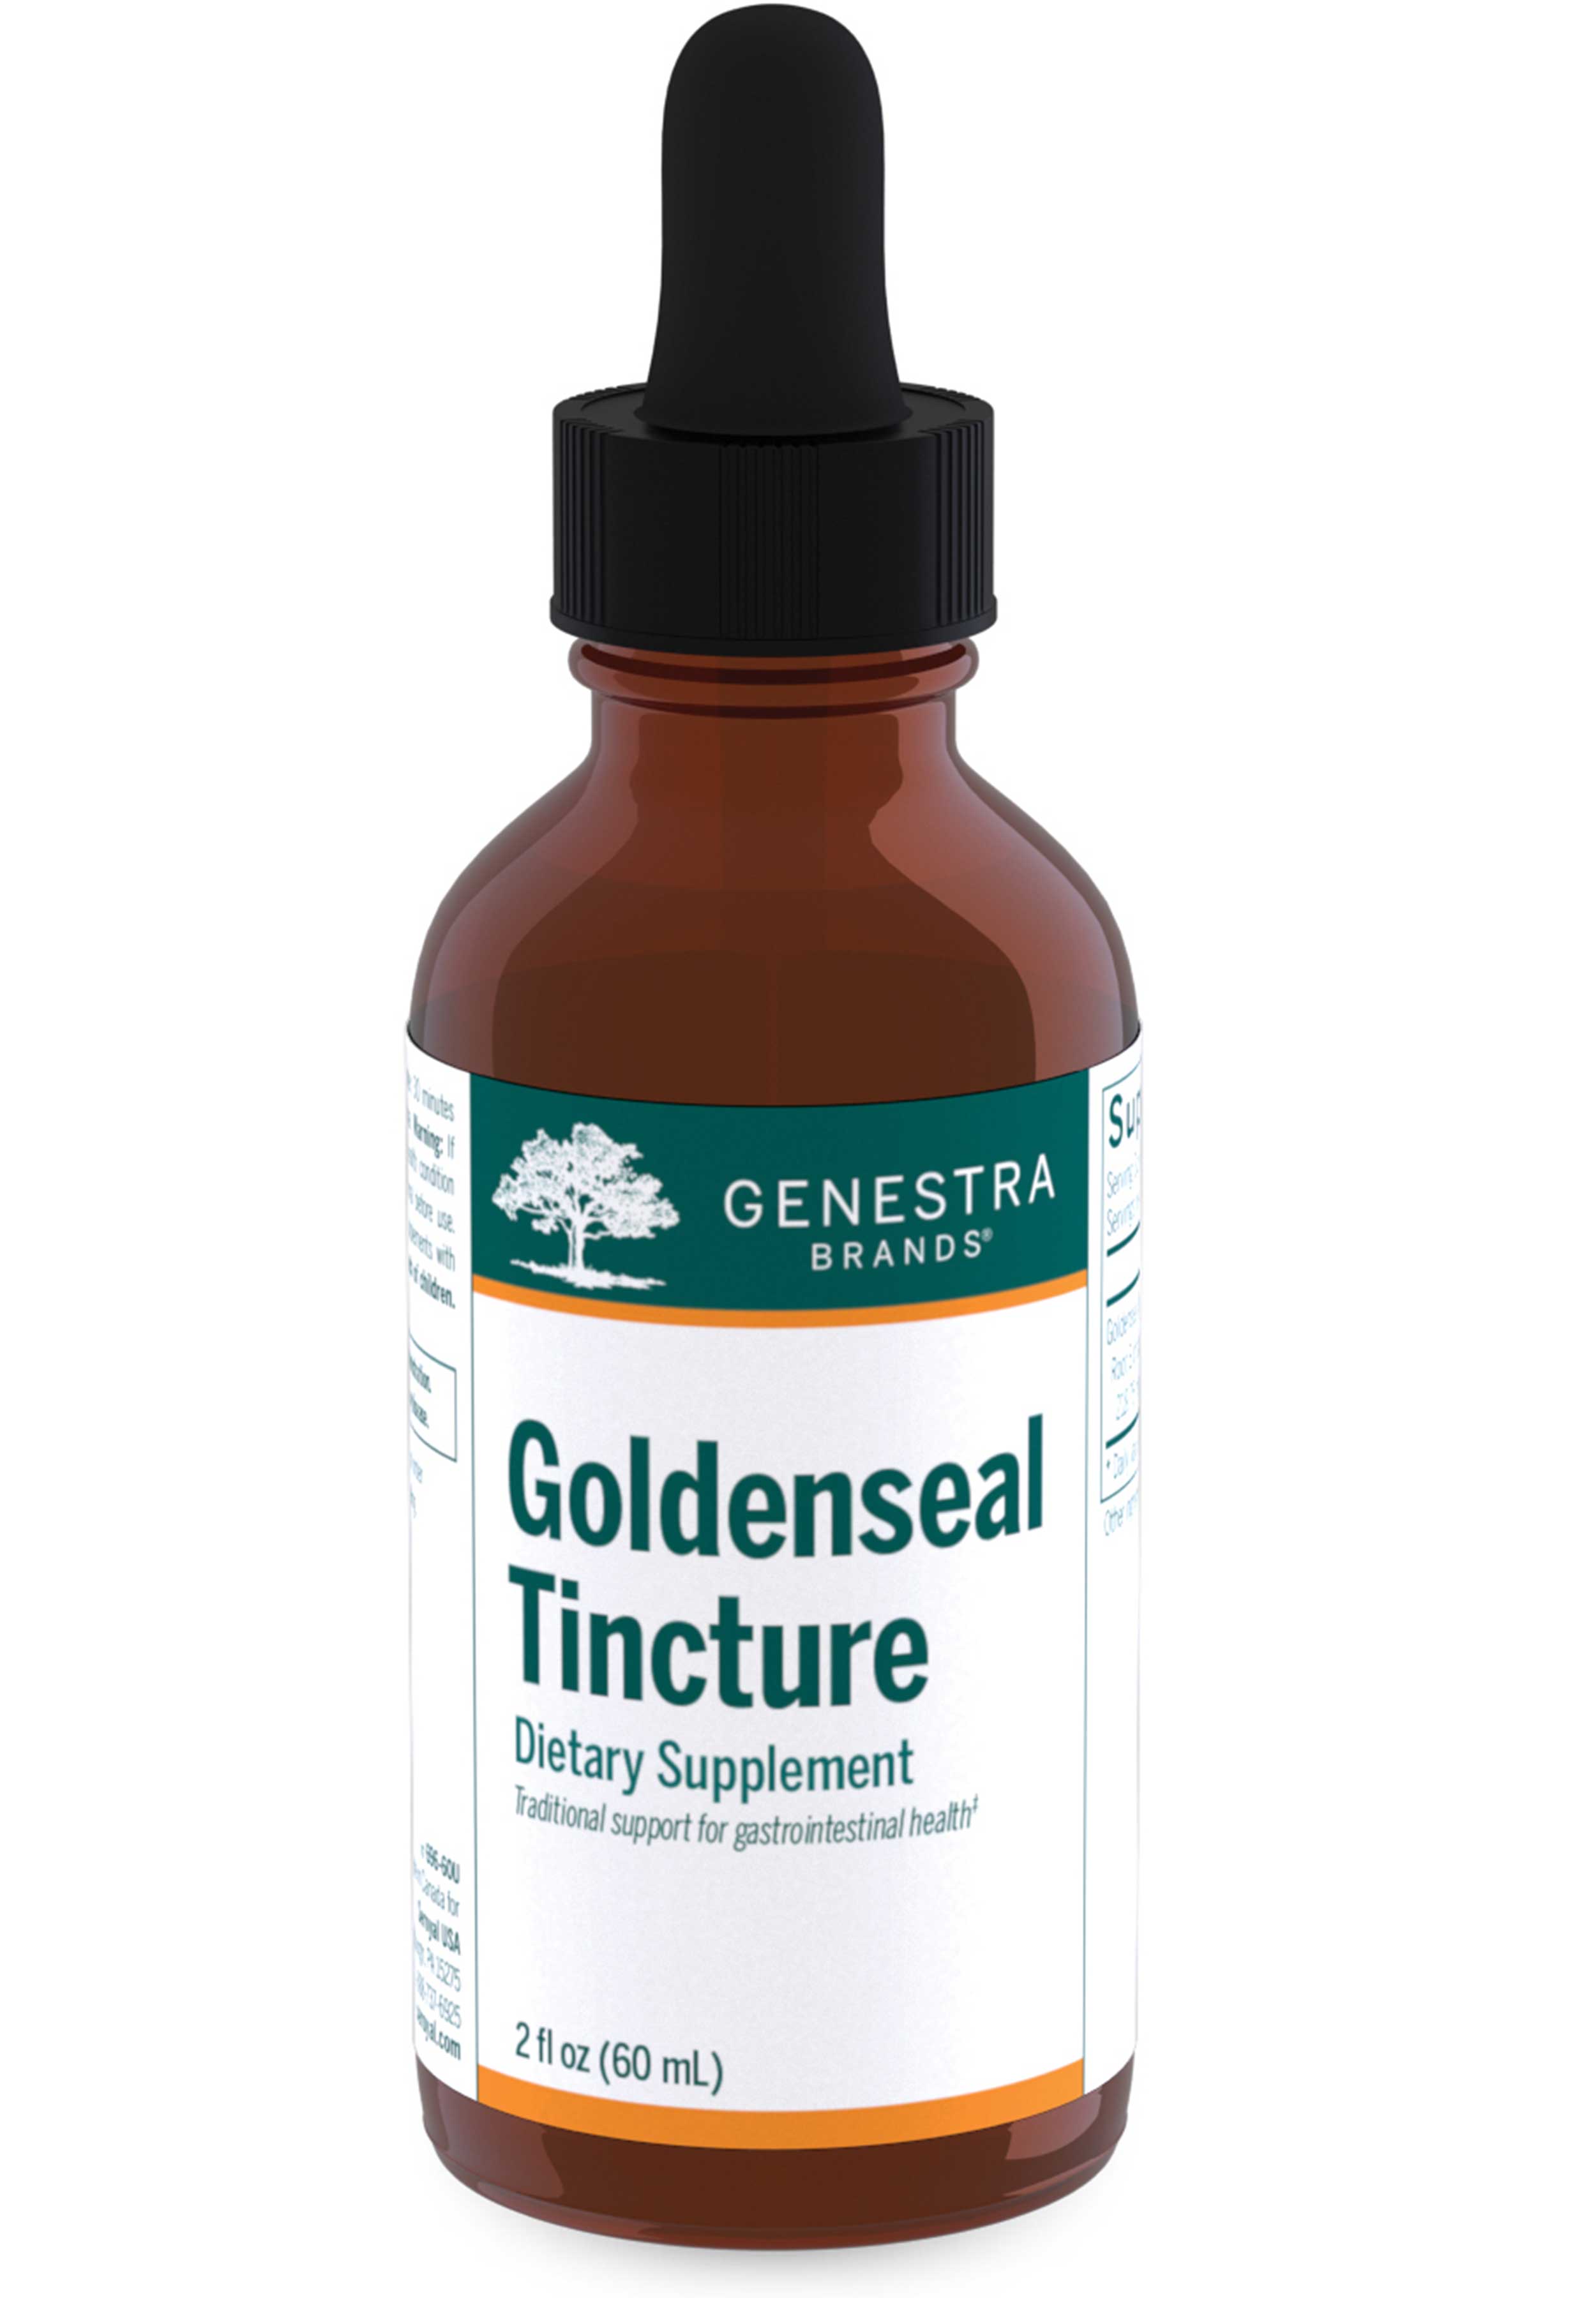 Genestra Brands Goldenseal Tincture